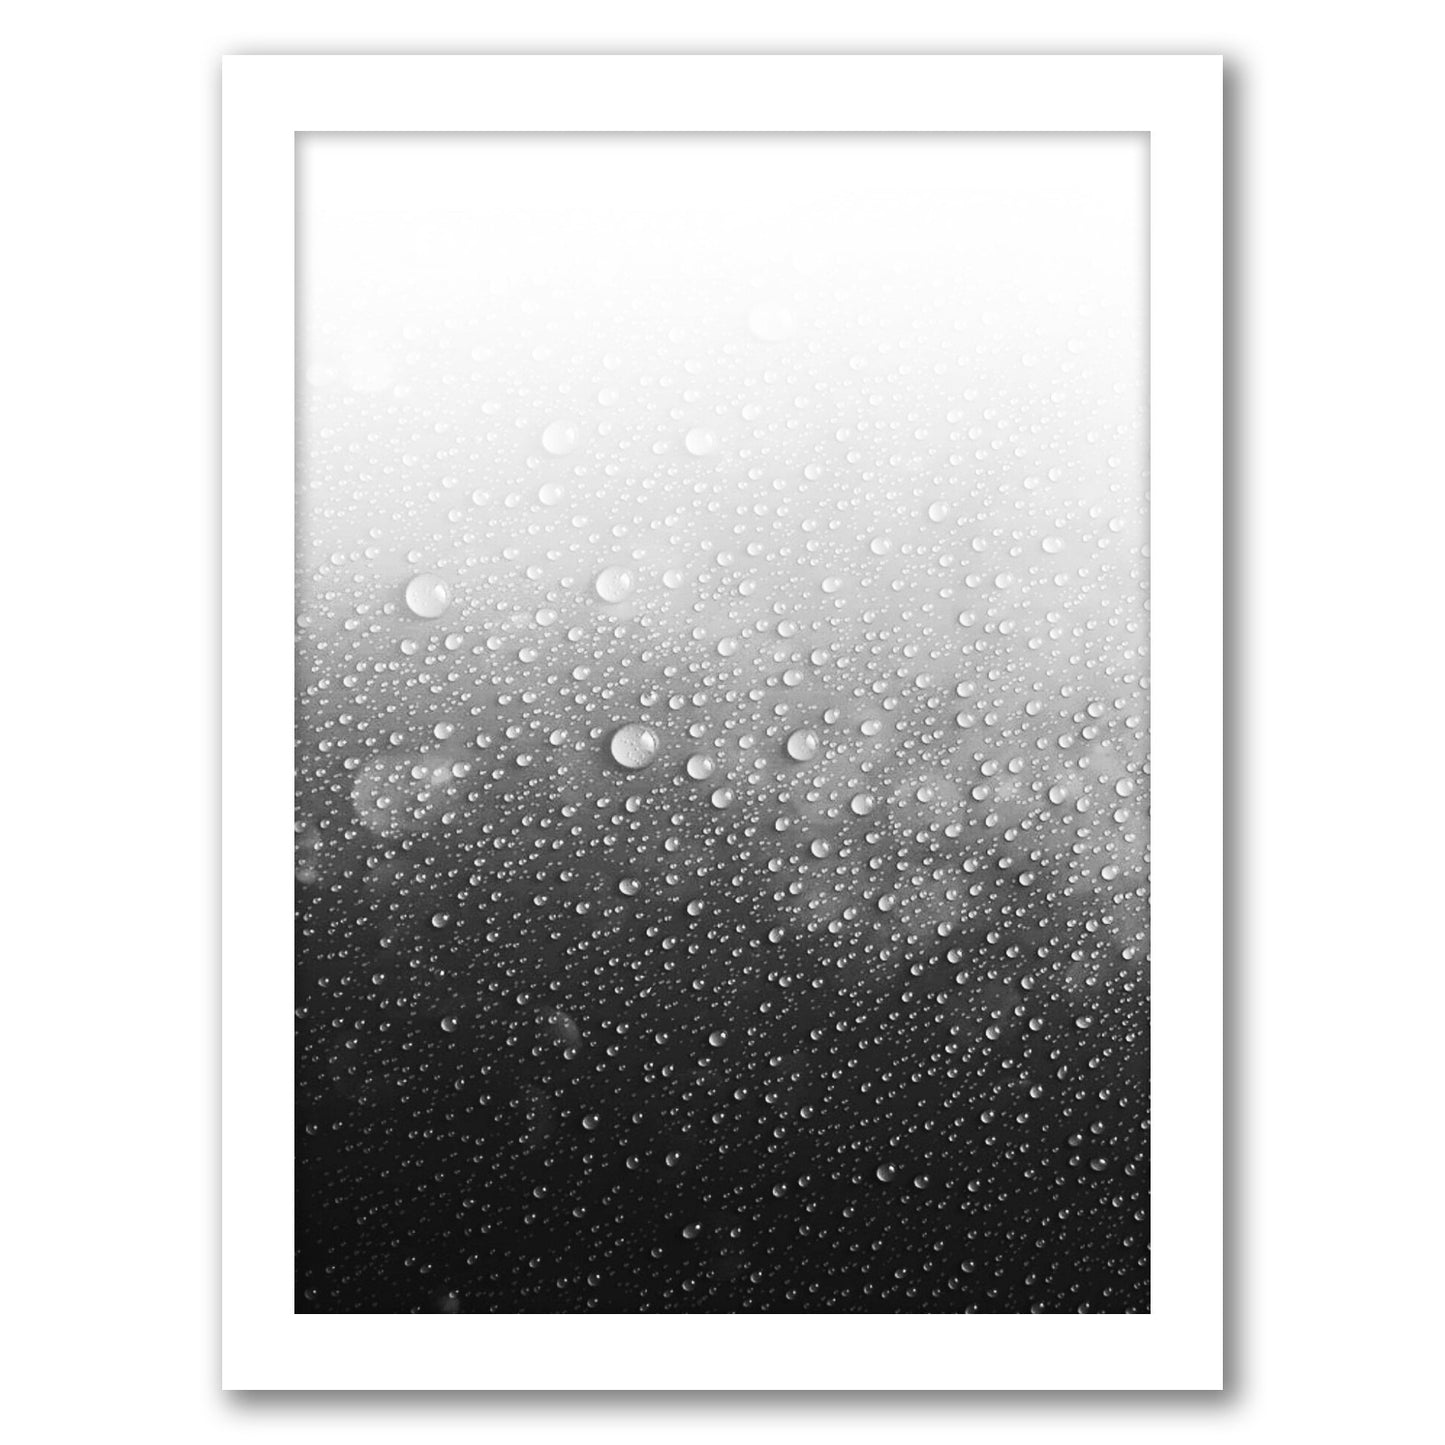 Wet by Emanuela Carratoni - Framed Print